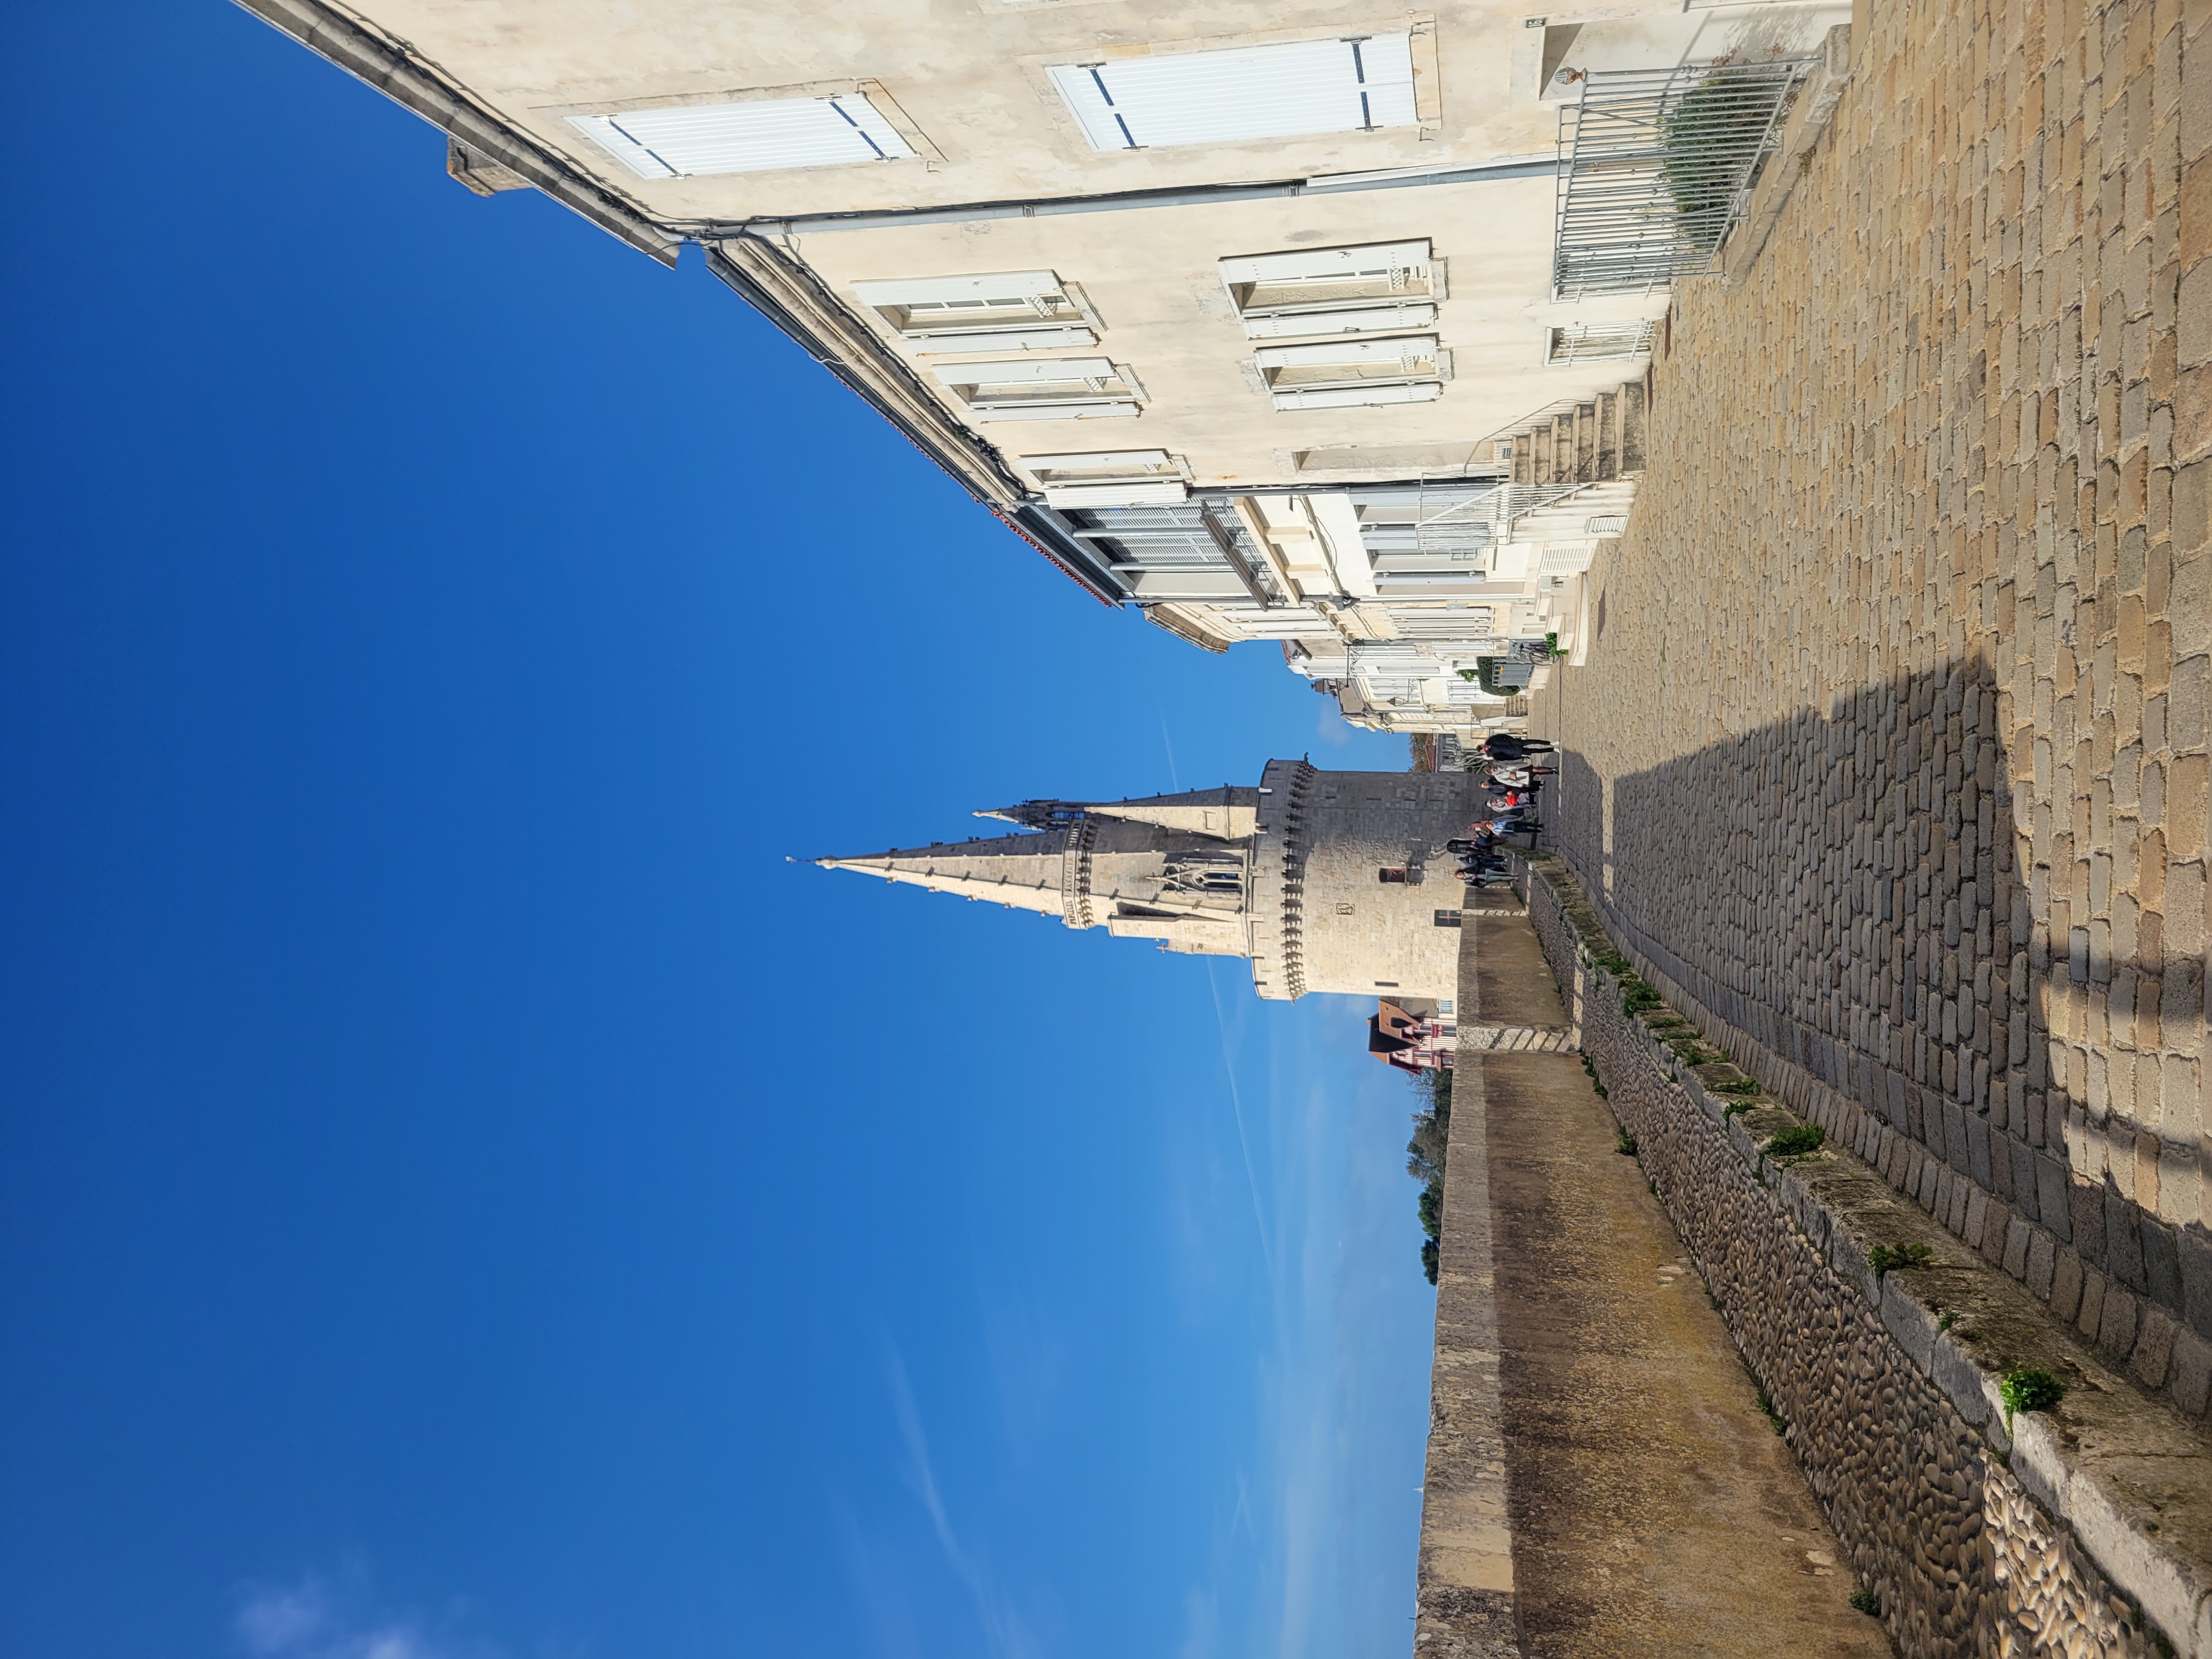 La Rochelle les trois tours